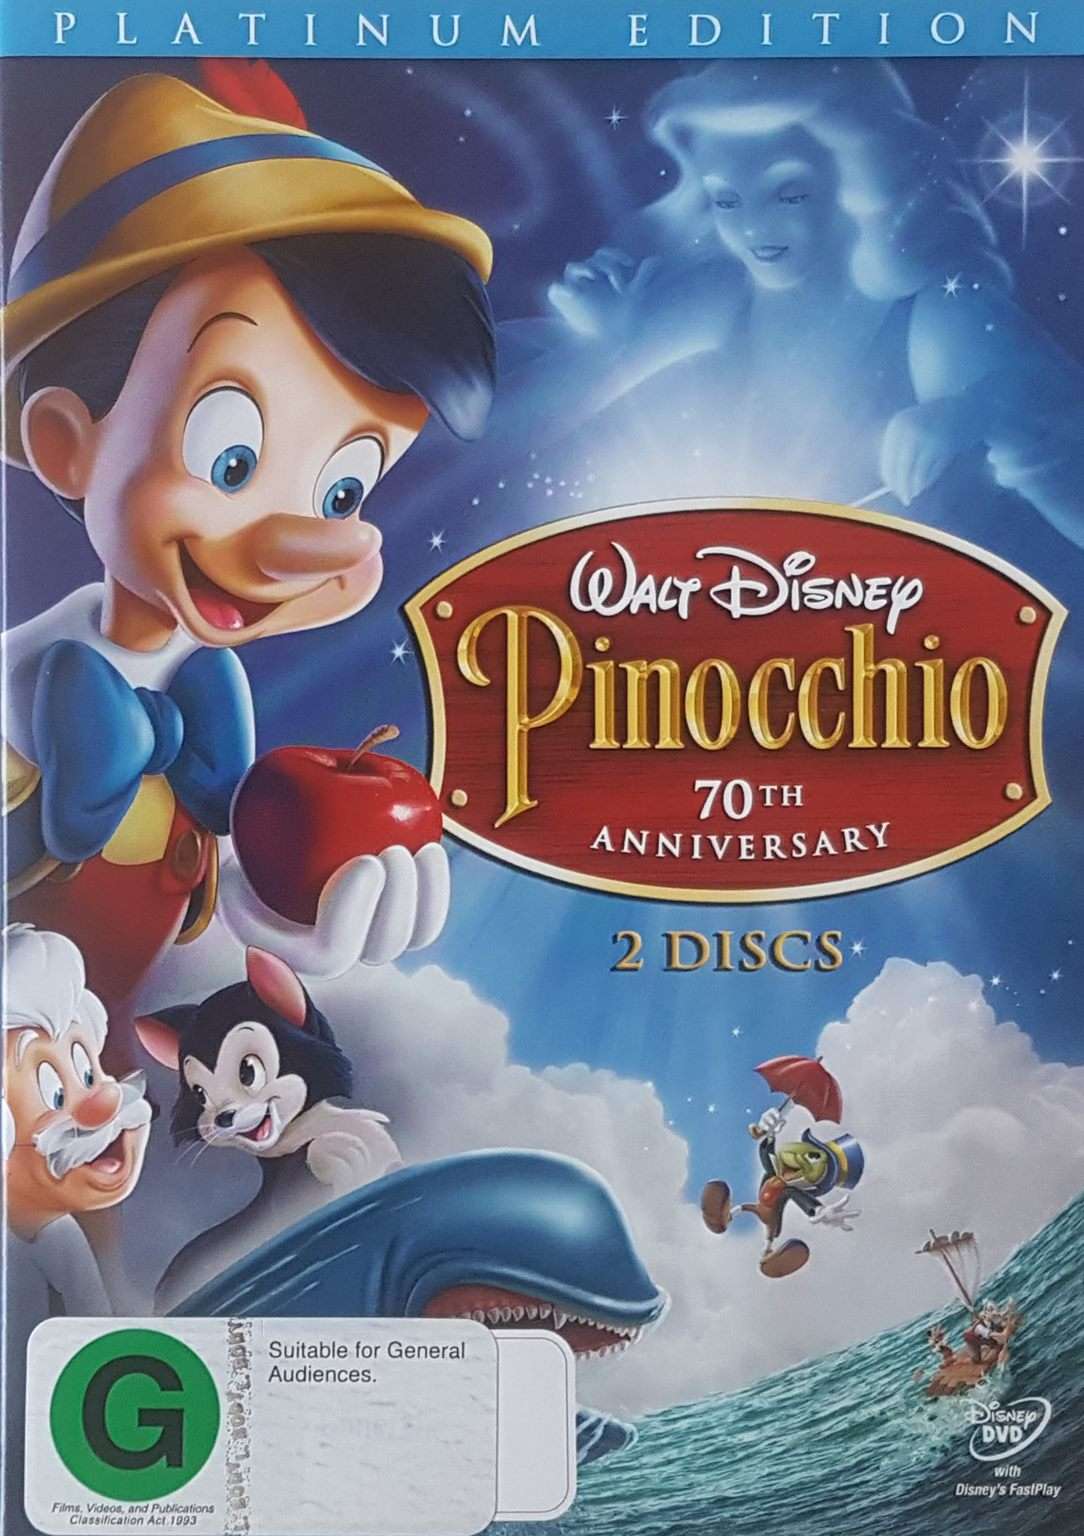 Pinocchio 1940 2 Disc Platinum Edition